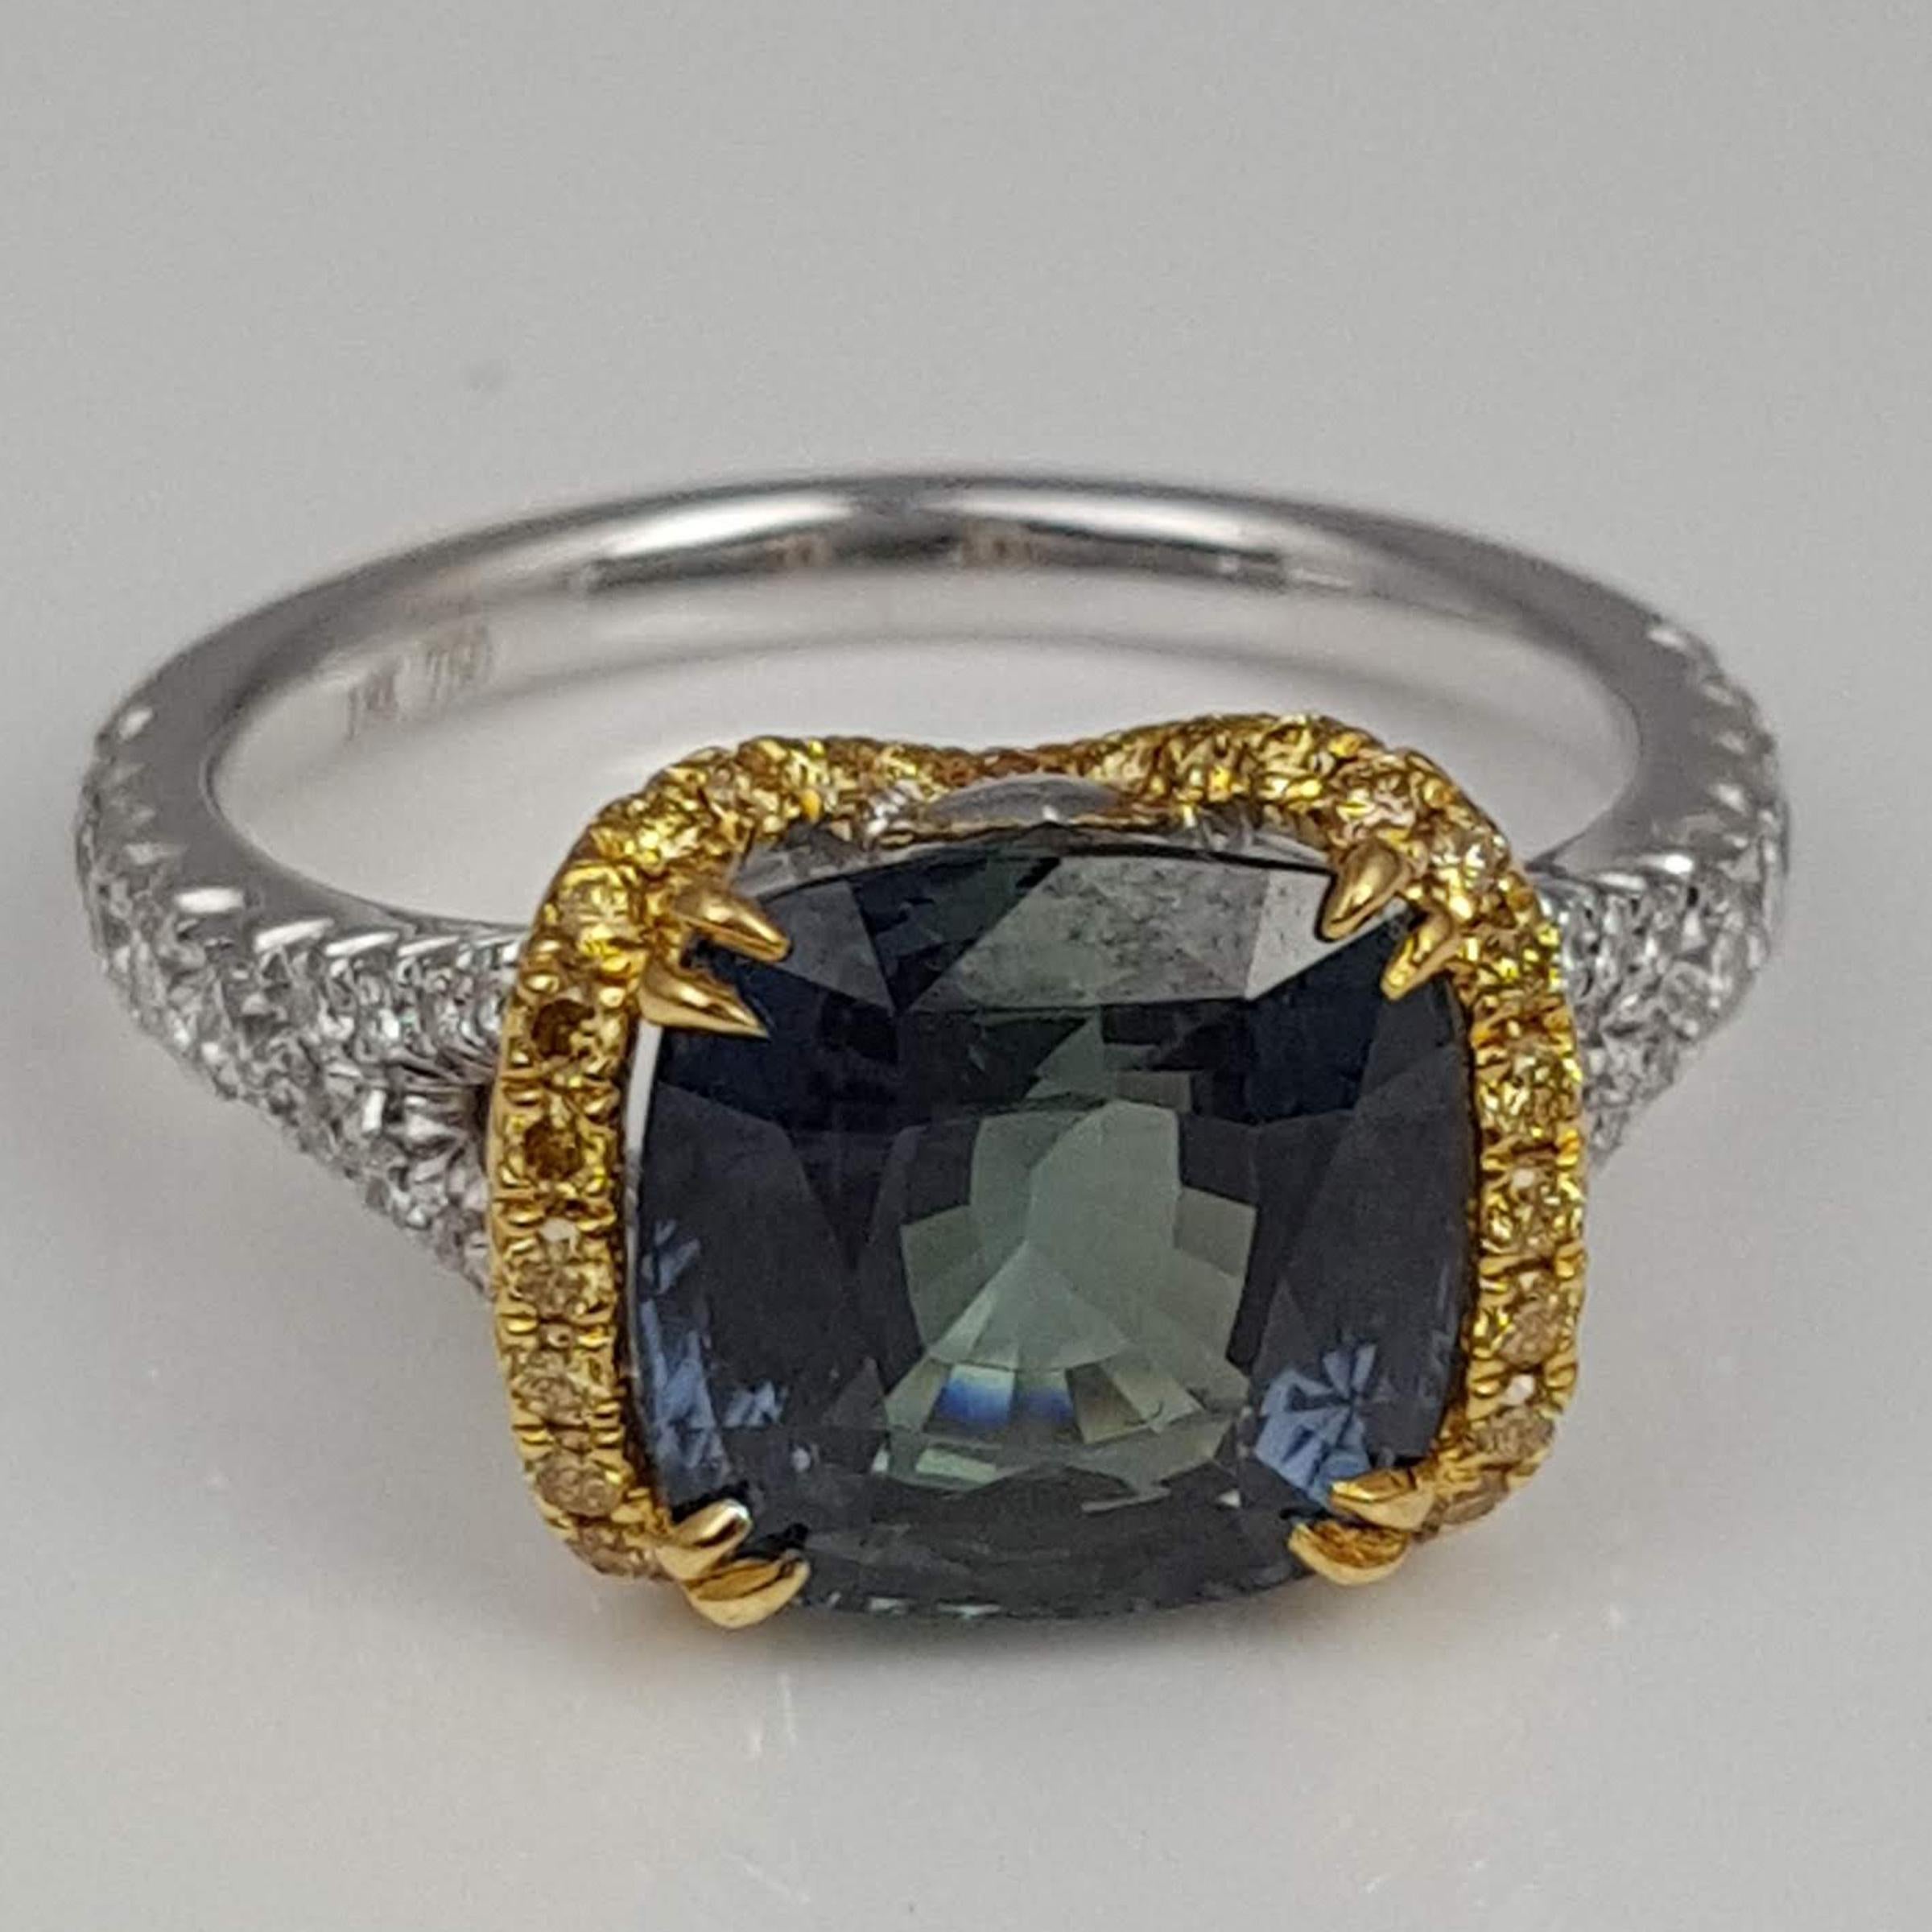 Dieser Ring ist ein atemberaubendes Stück, das Eleganz mit Einzigartigkeit verbindet. Der grüne Saphir im Kissenschliff mit 4,50 Karat in der Mitte hat nicht nur eine beeindruckende Größe, sondern verfügt auch über ein GIA-Zertifikat, das seine